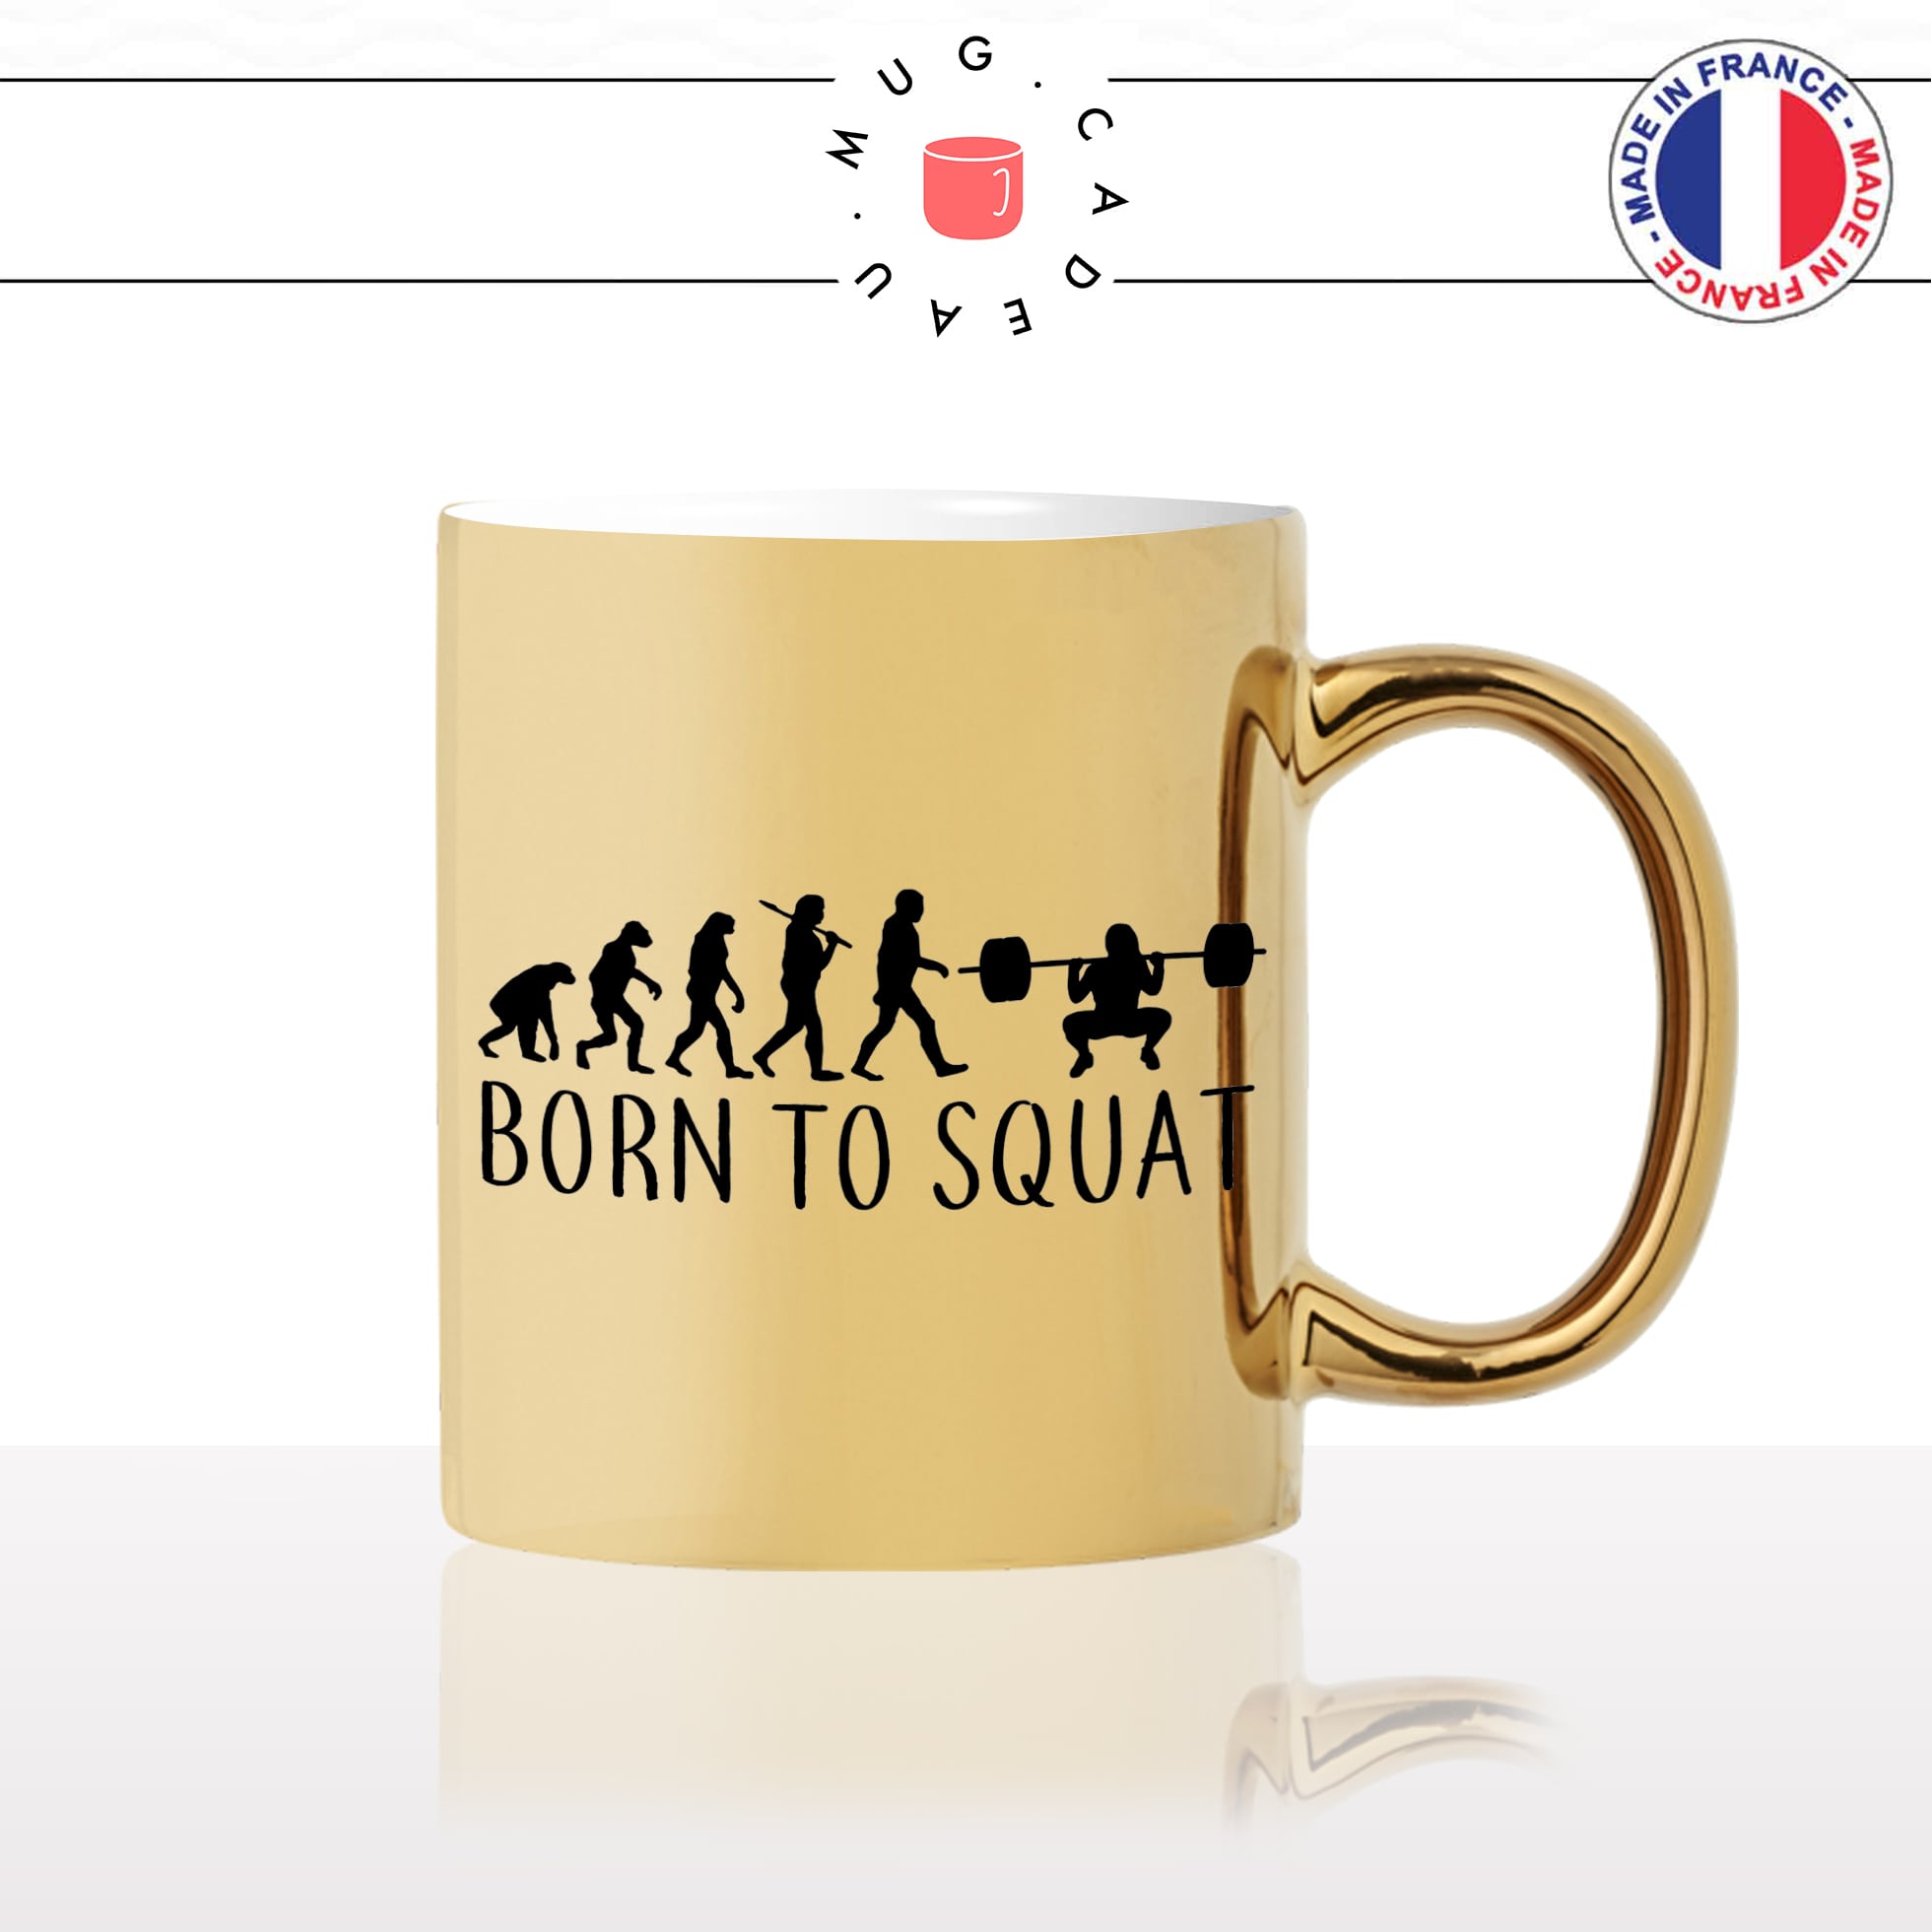 mug-tasse-or-doré-gold-born-to-squat-fitness-femme-jambe-salle-de-sport-evolution-humaine-cool-idée-cadeau-fun-café-thé-personnalisé2-min